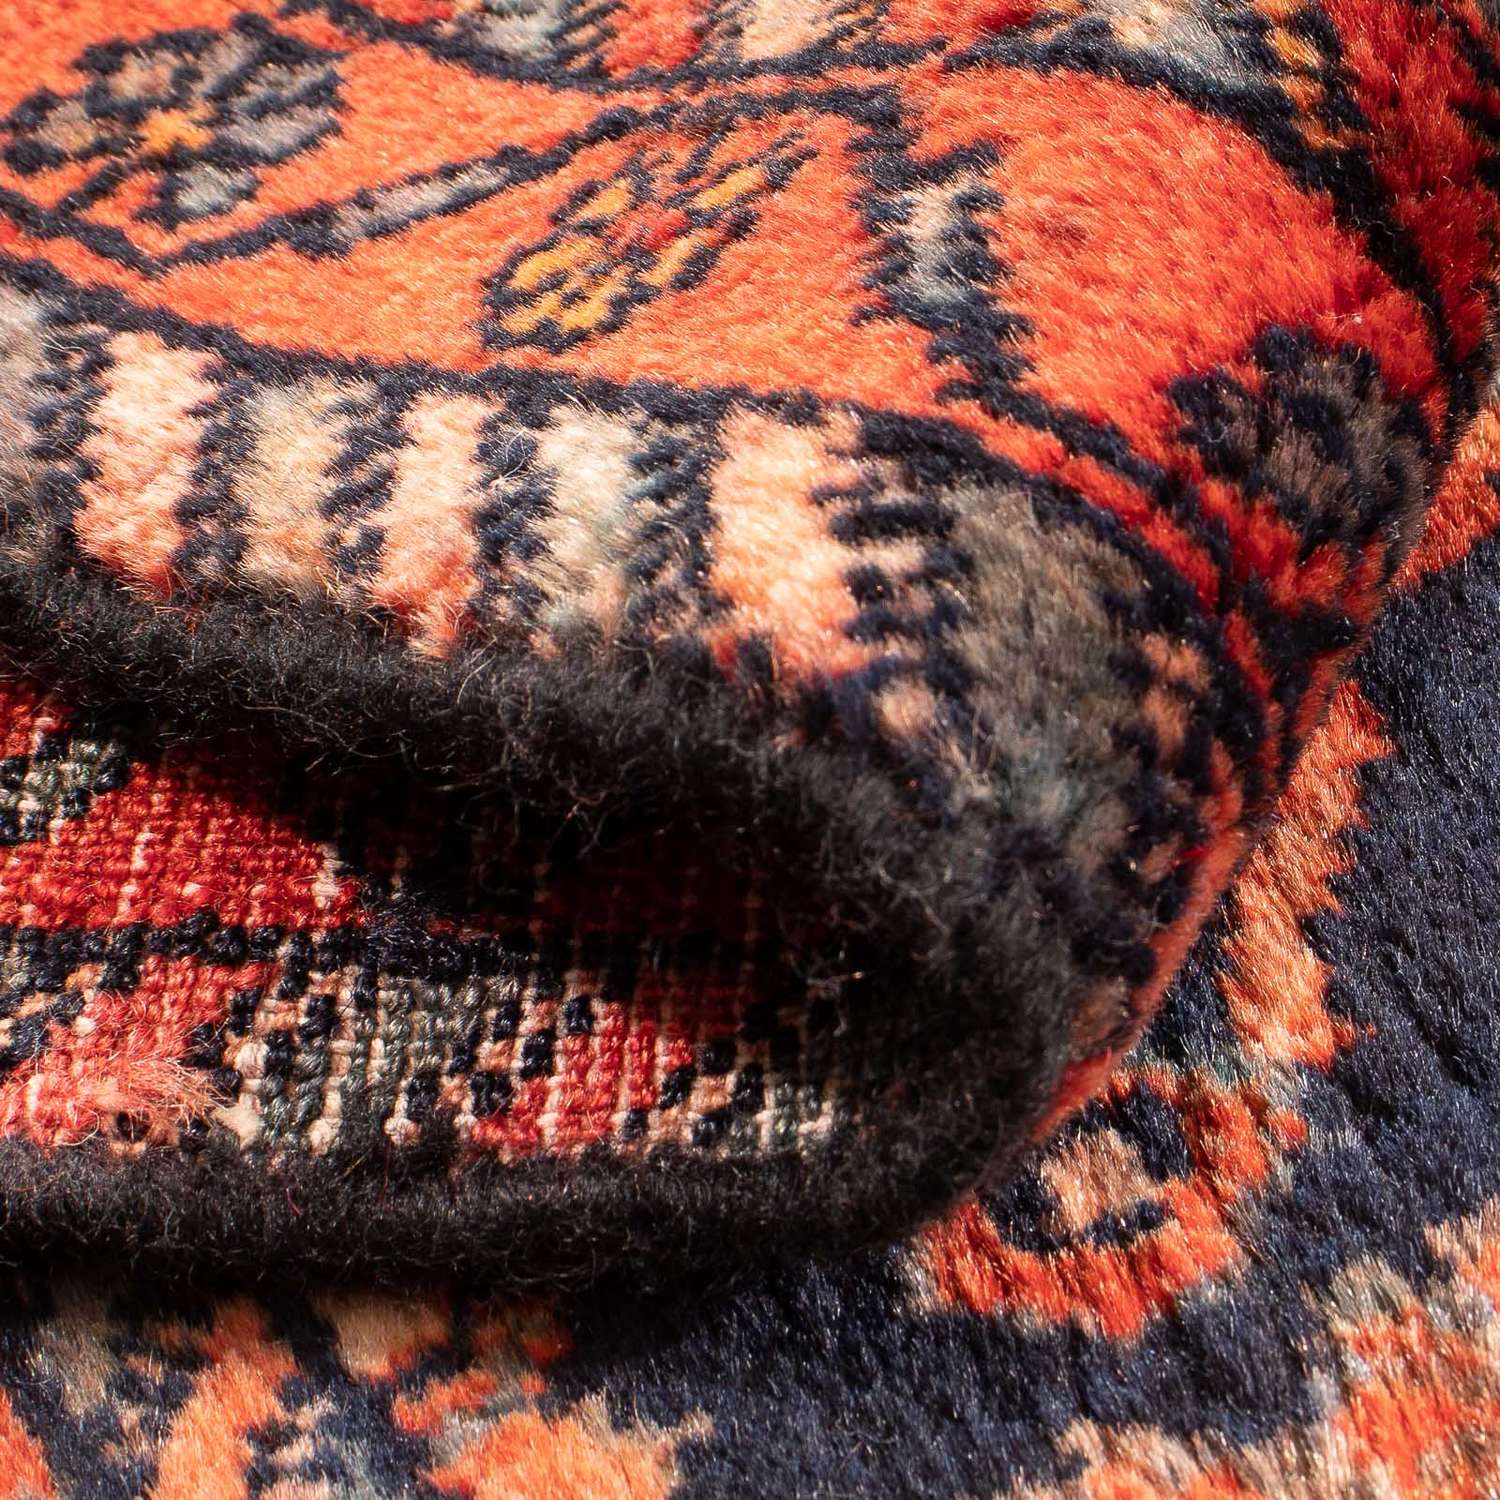 Perski dywan - Nomadyczny - 127 x 71 cm - wielokolorowy